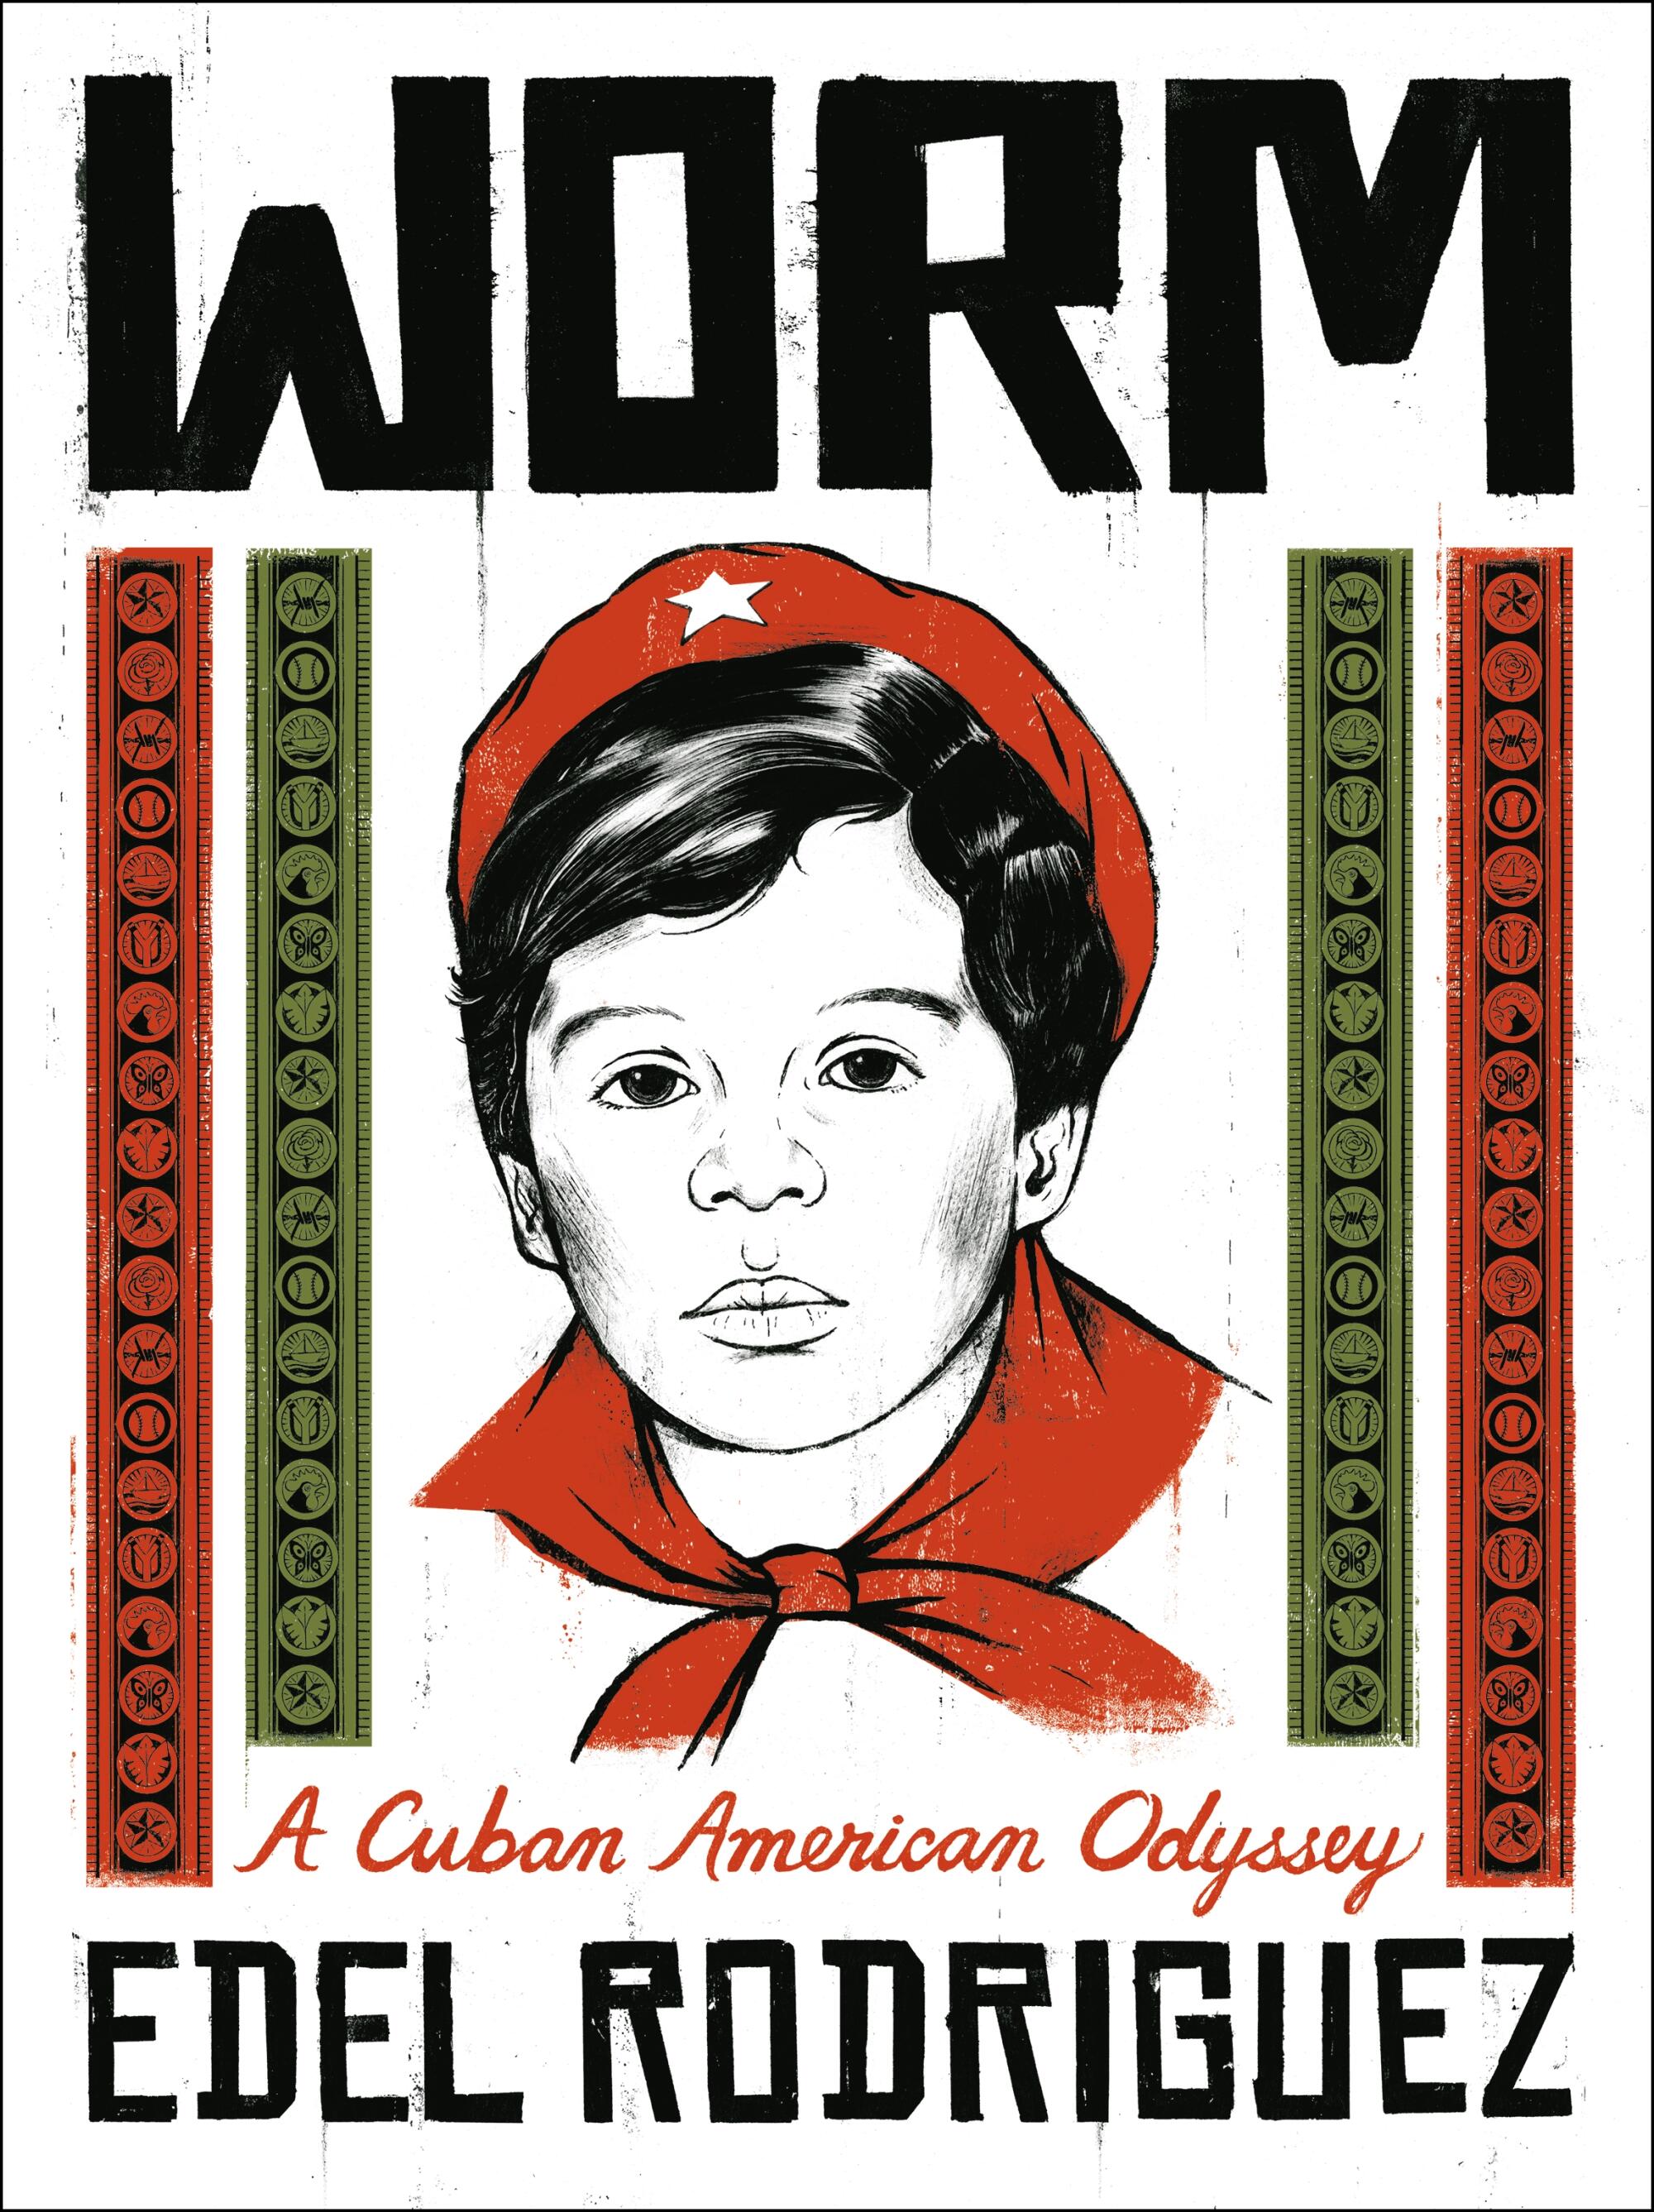 Worm: A Cuban American Odyssey 

By Edel Rodriguez

